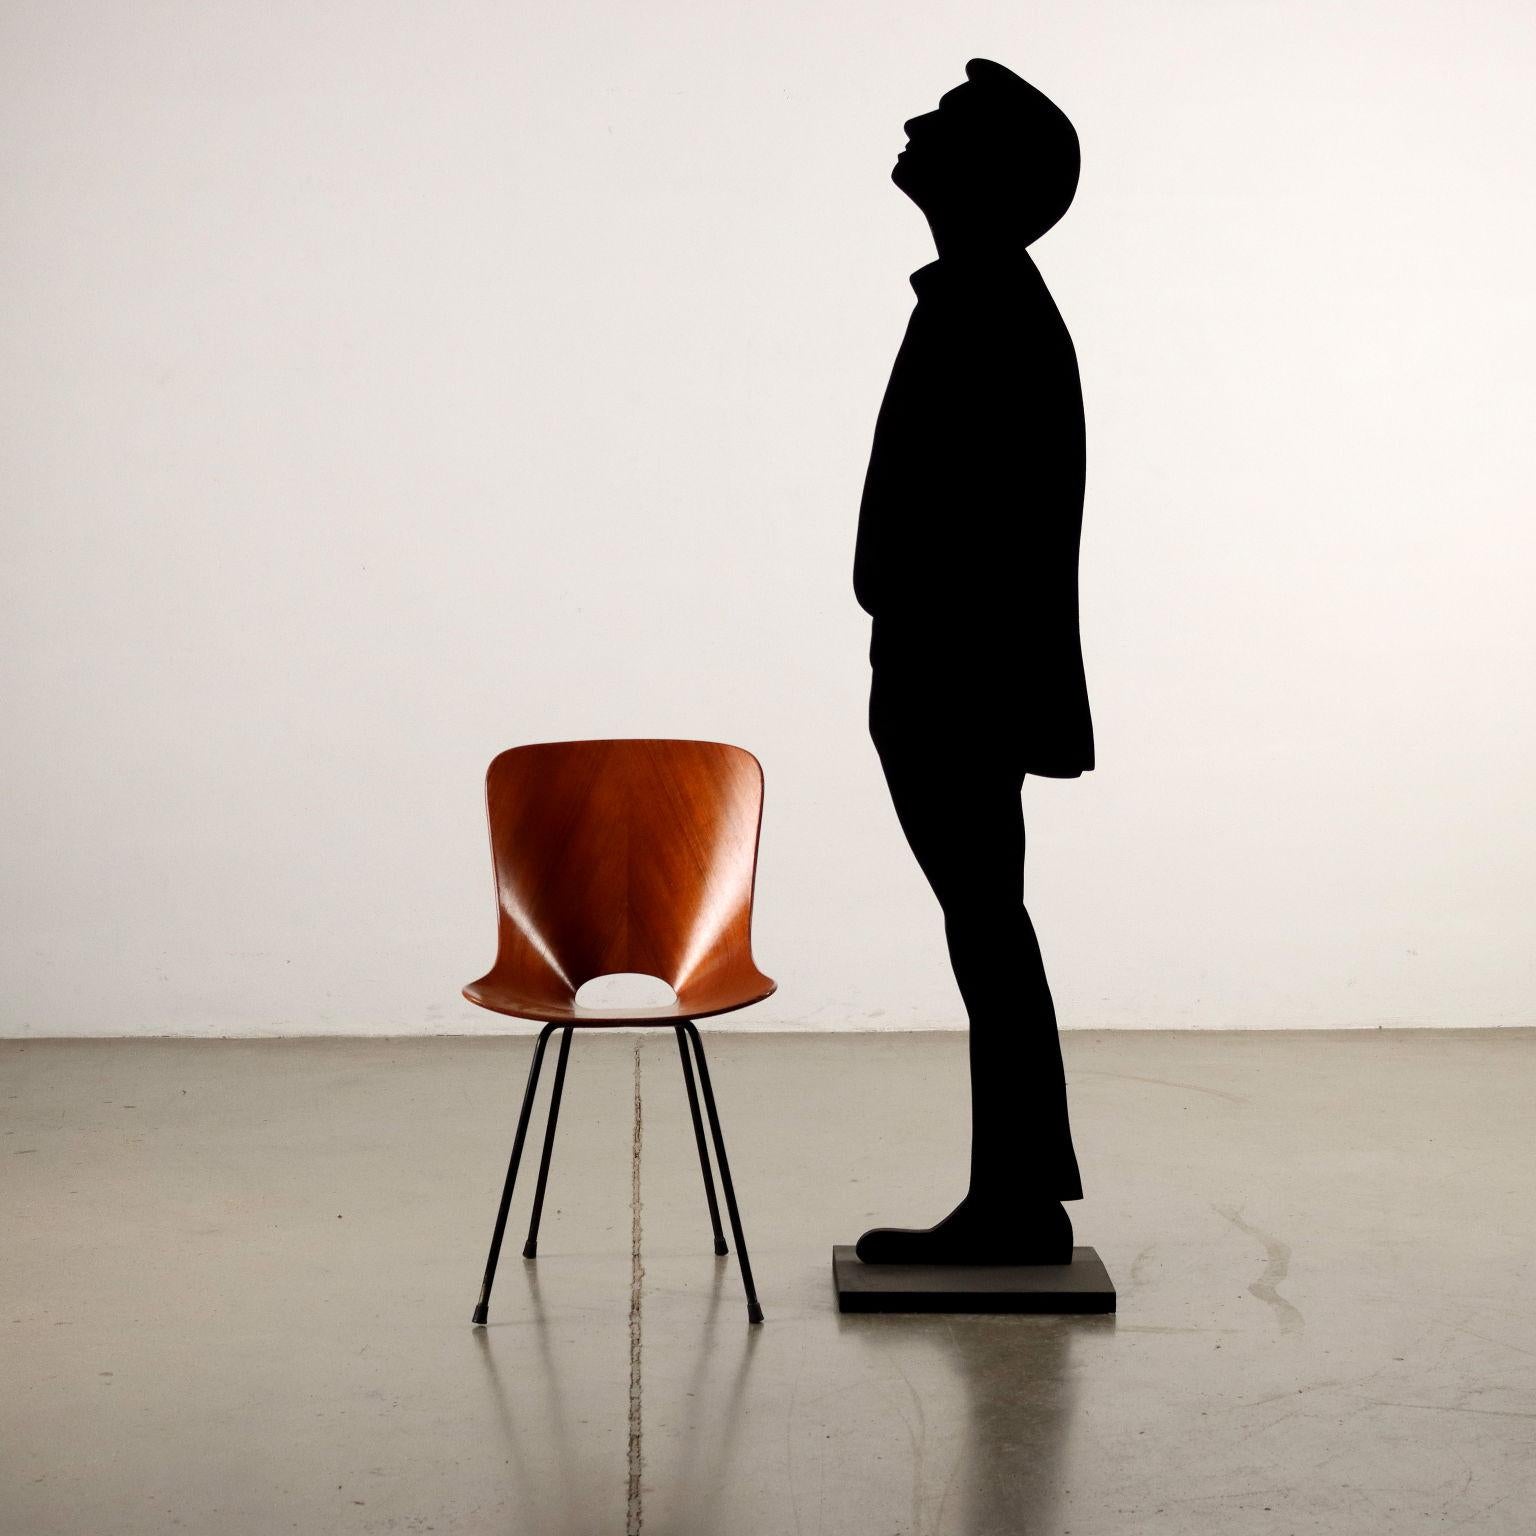 Variante dell'iconica sedia Medea in legno curvato con struttura in metallo smaltato; presenta il marchio della manifattura.
Sedia che ha segnato la storia del Design Italiano e prodotta dall'azienda Brianzola 'F.lli Tagliabue' dal 1955, viene